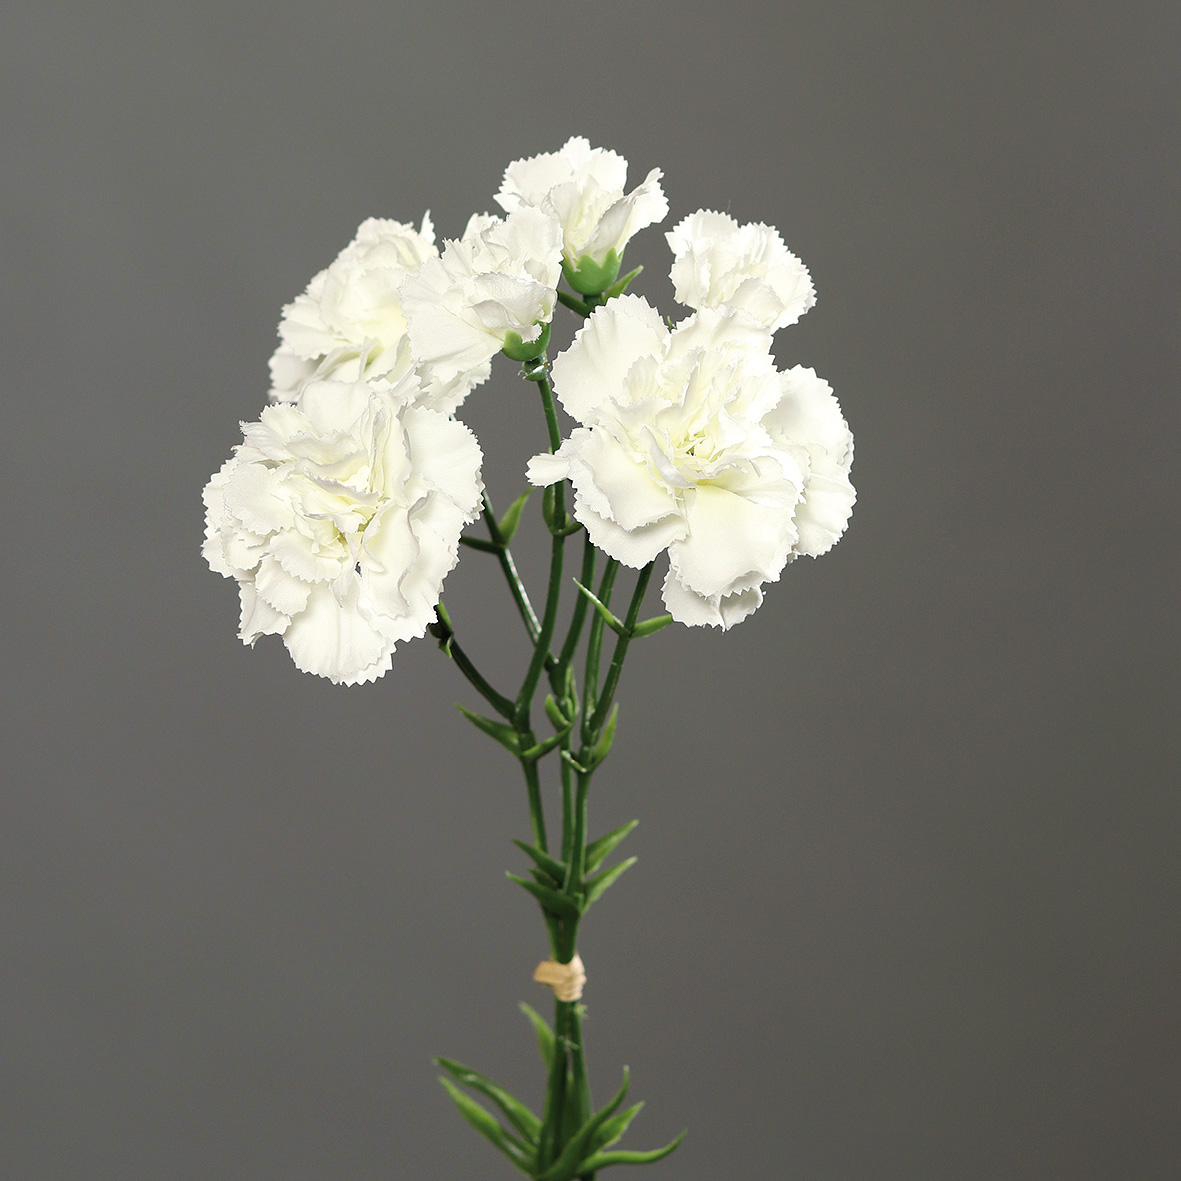 Nelkenbund mit 3 Stielen 30cm weiß DP Kunstblumen künstliche Blumen Nelken | Kunstblumen